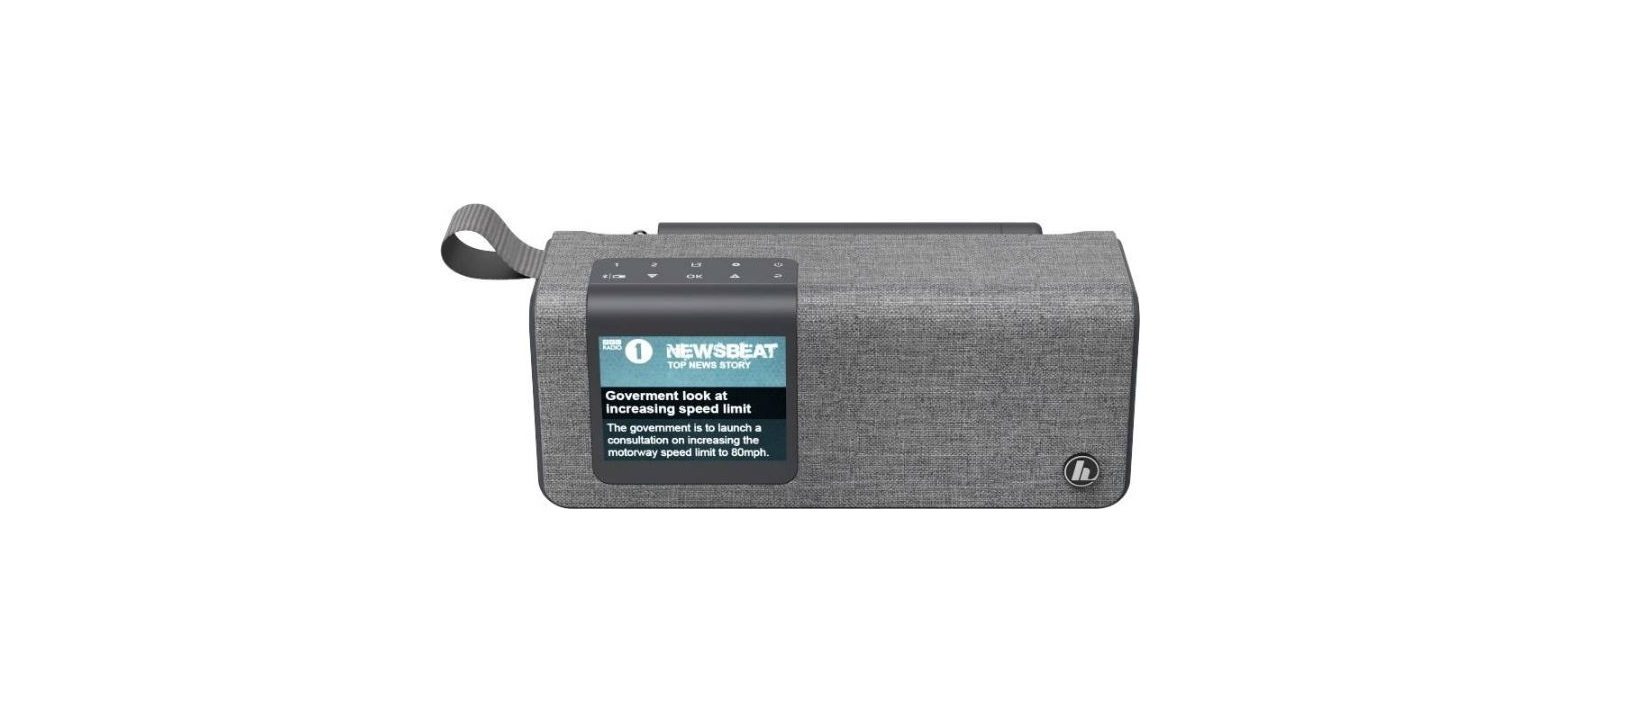 00173191 DR200BT Portable Digital Radio